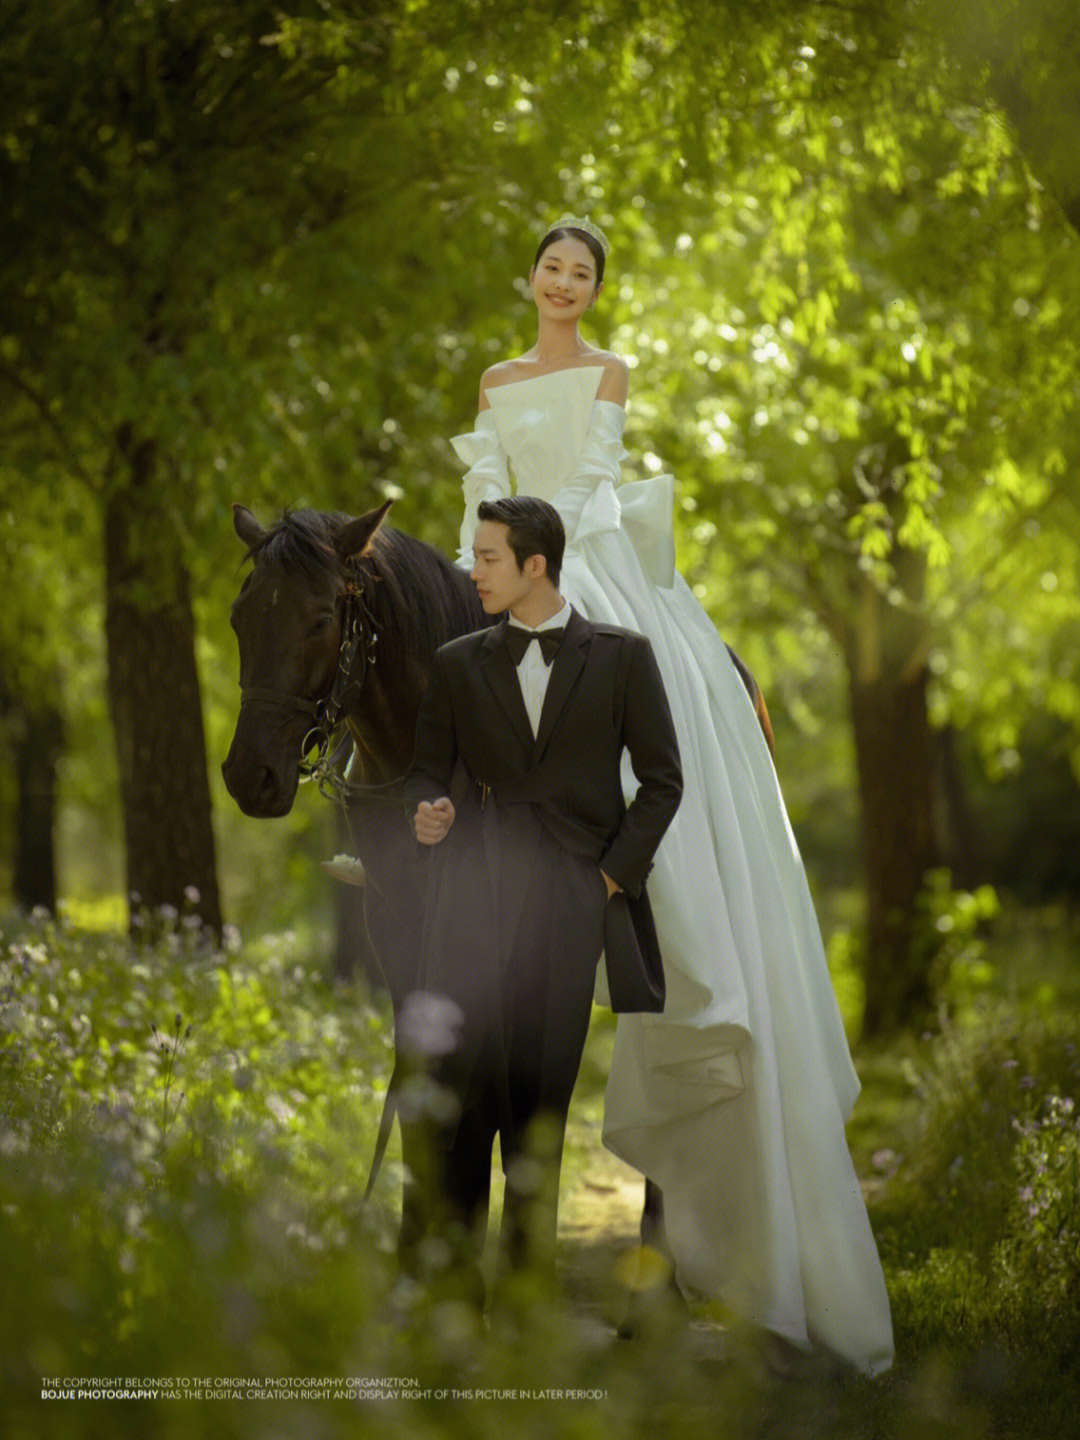 被晚晚穿婚纱骑马的图惊艳到了同款婚纱照